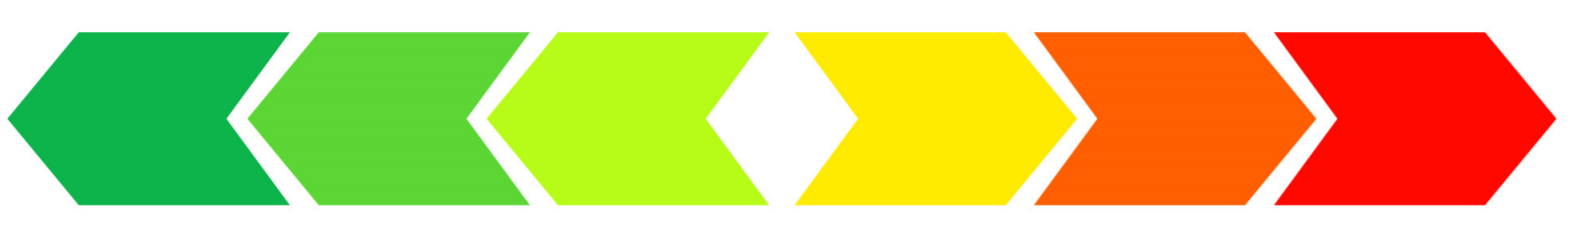 Un continuum de couleurs: vert, jaune, rouge